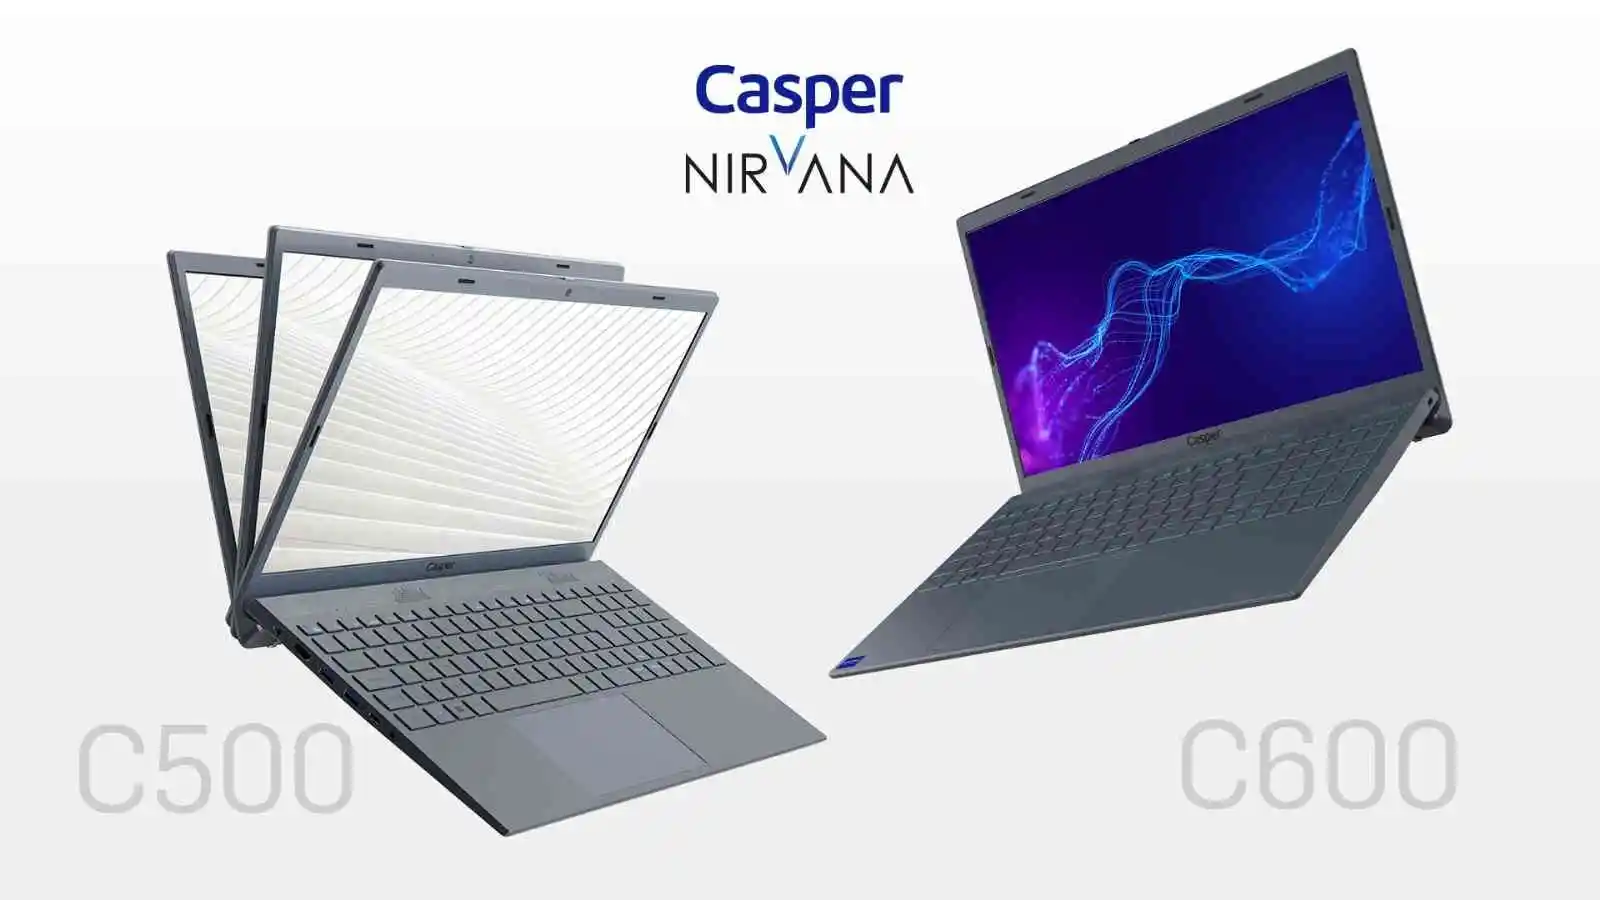 Casper'dan kullanıcılara 2 yeni notebook
